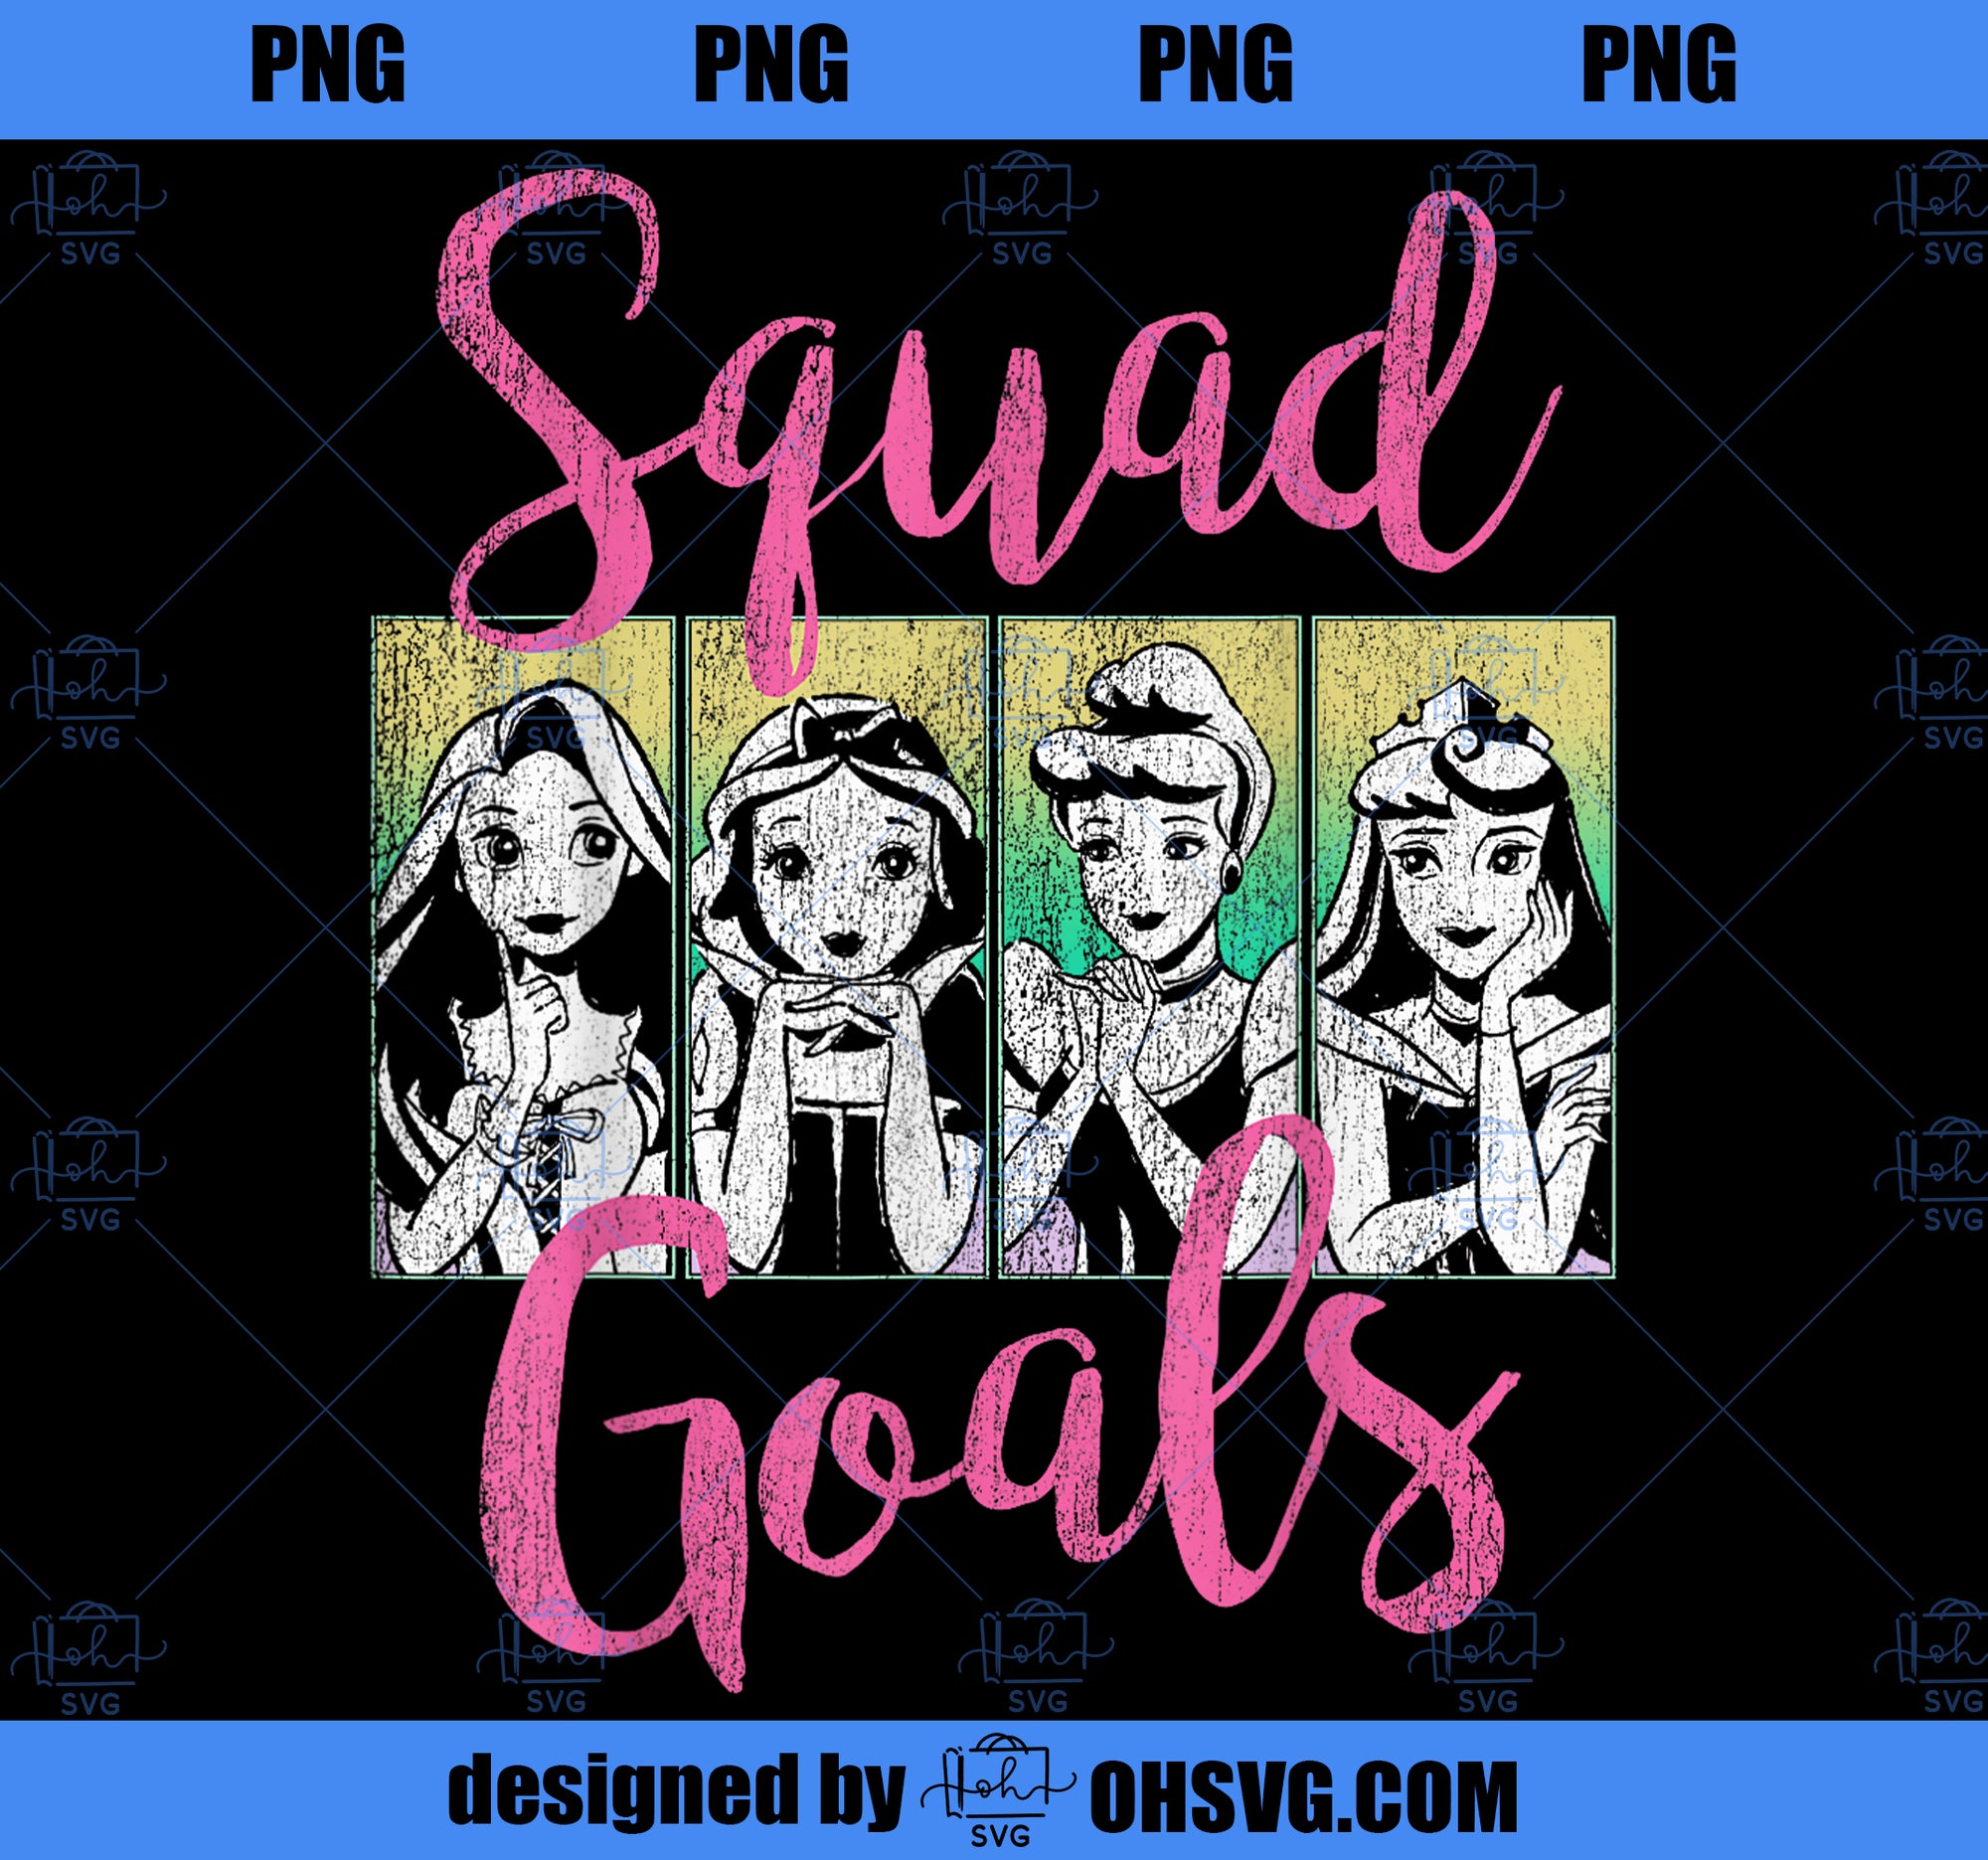 Disney Princess Squad Goals Vintage Group Shot Poster PNG, Disney PNG, Princess PNG